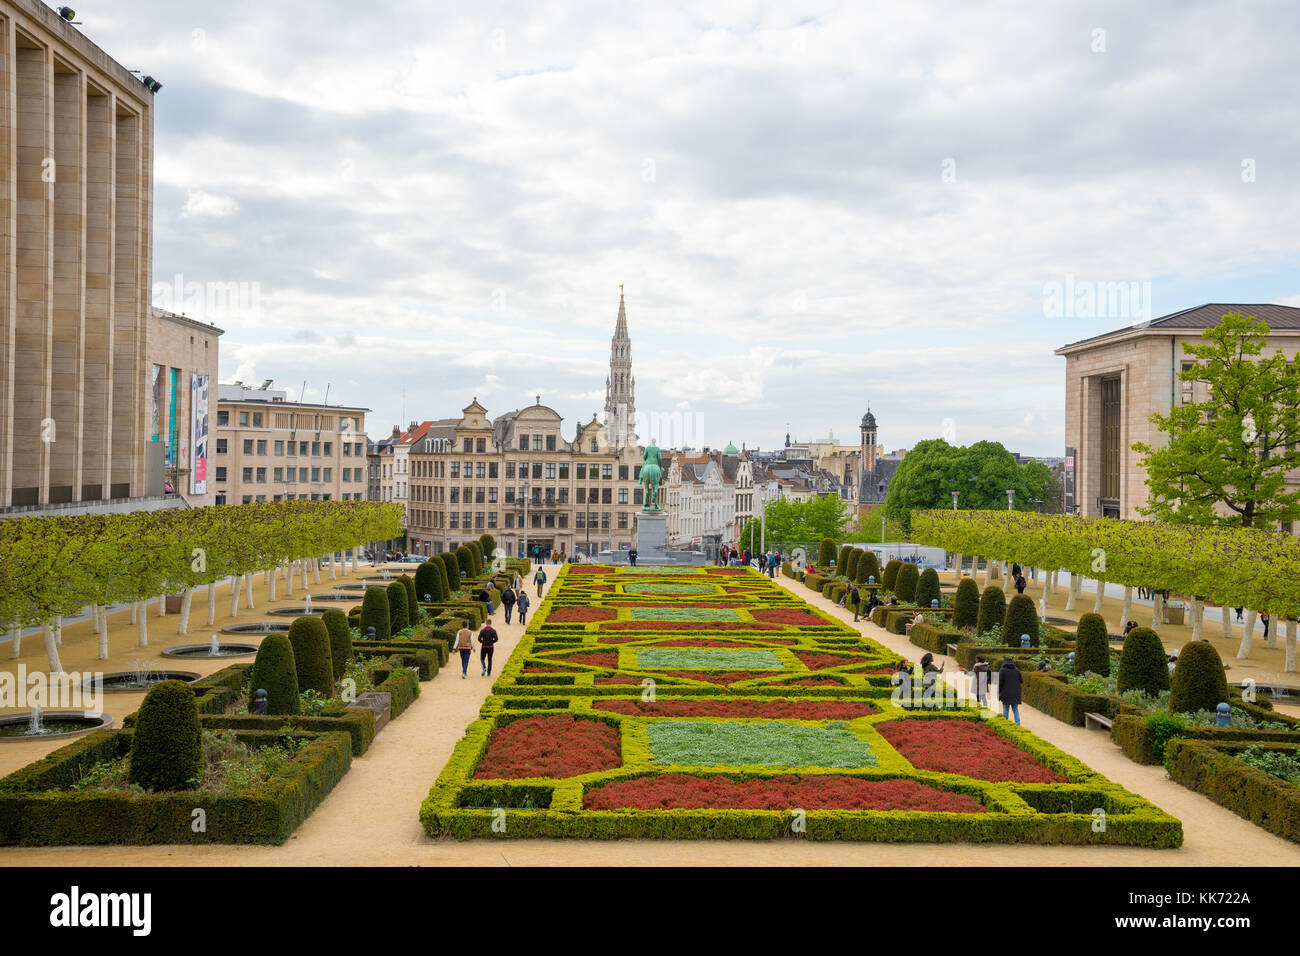 Bruxelles, Belgio - 22 aprile 2017: montare delle arti o giardini kunstberg come si vede dalla elevata vantage point a Bruxelles, in Belgio. Foto Stock